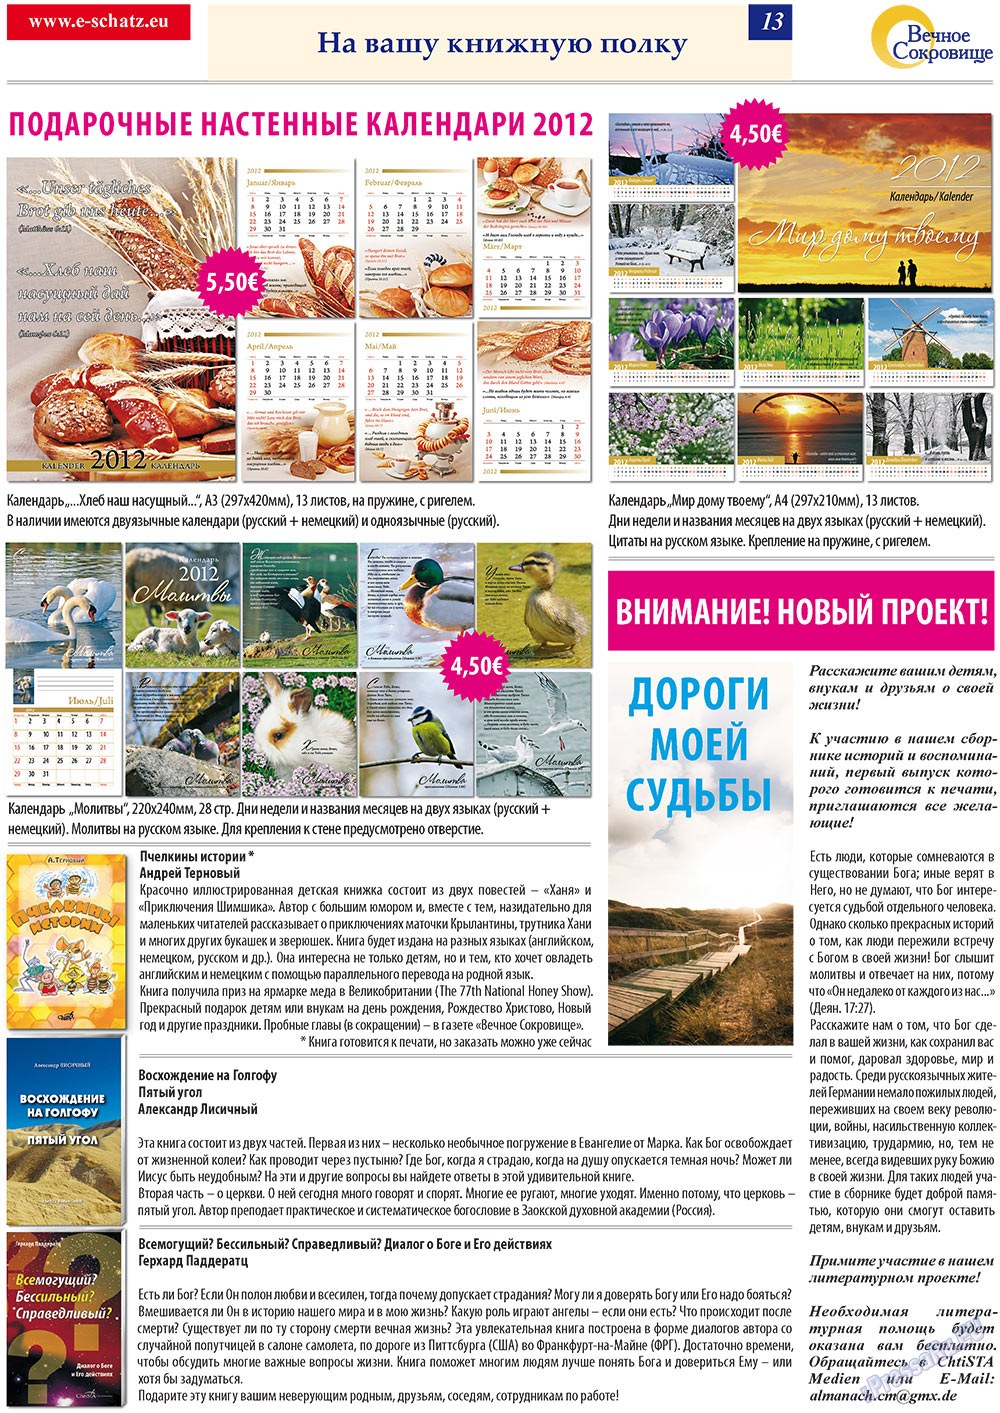 Вечное сокровище (газета). 2011 год, номер 6, стр. 13